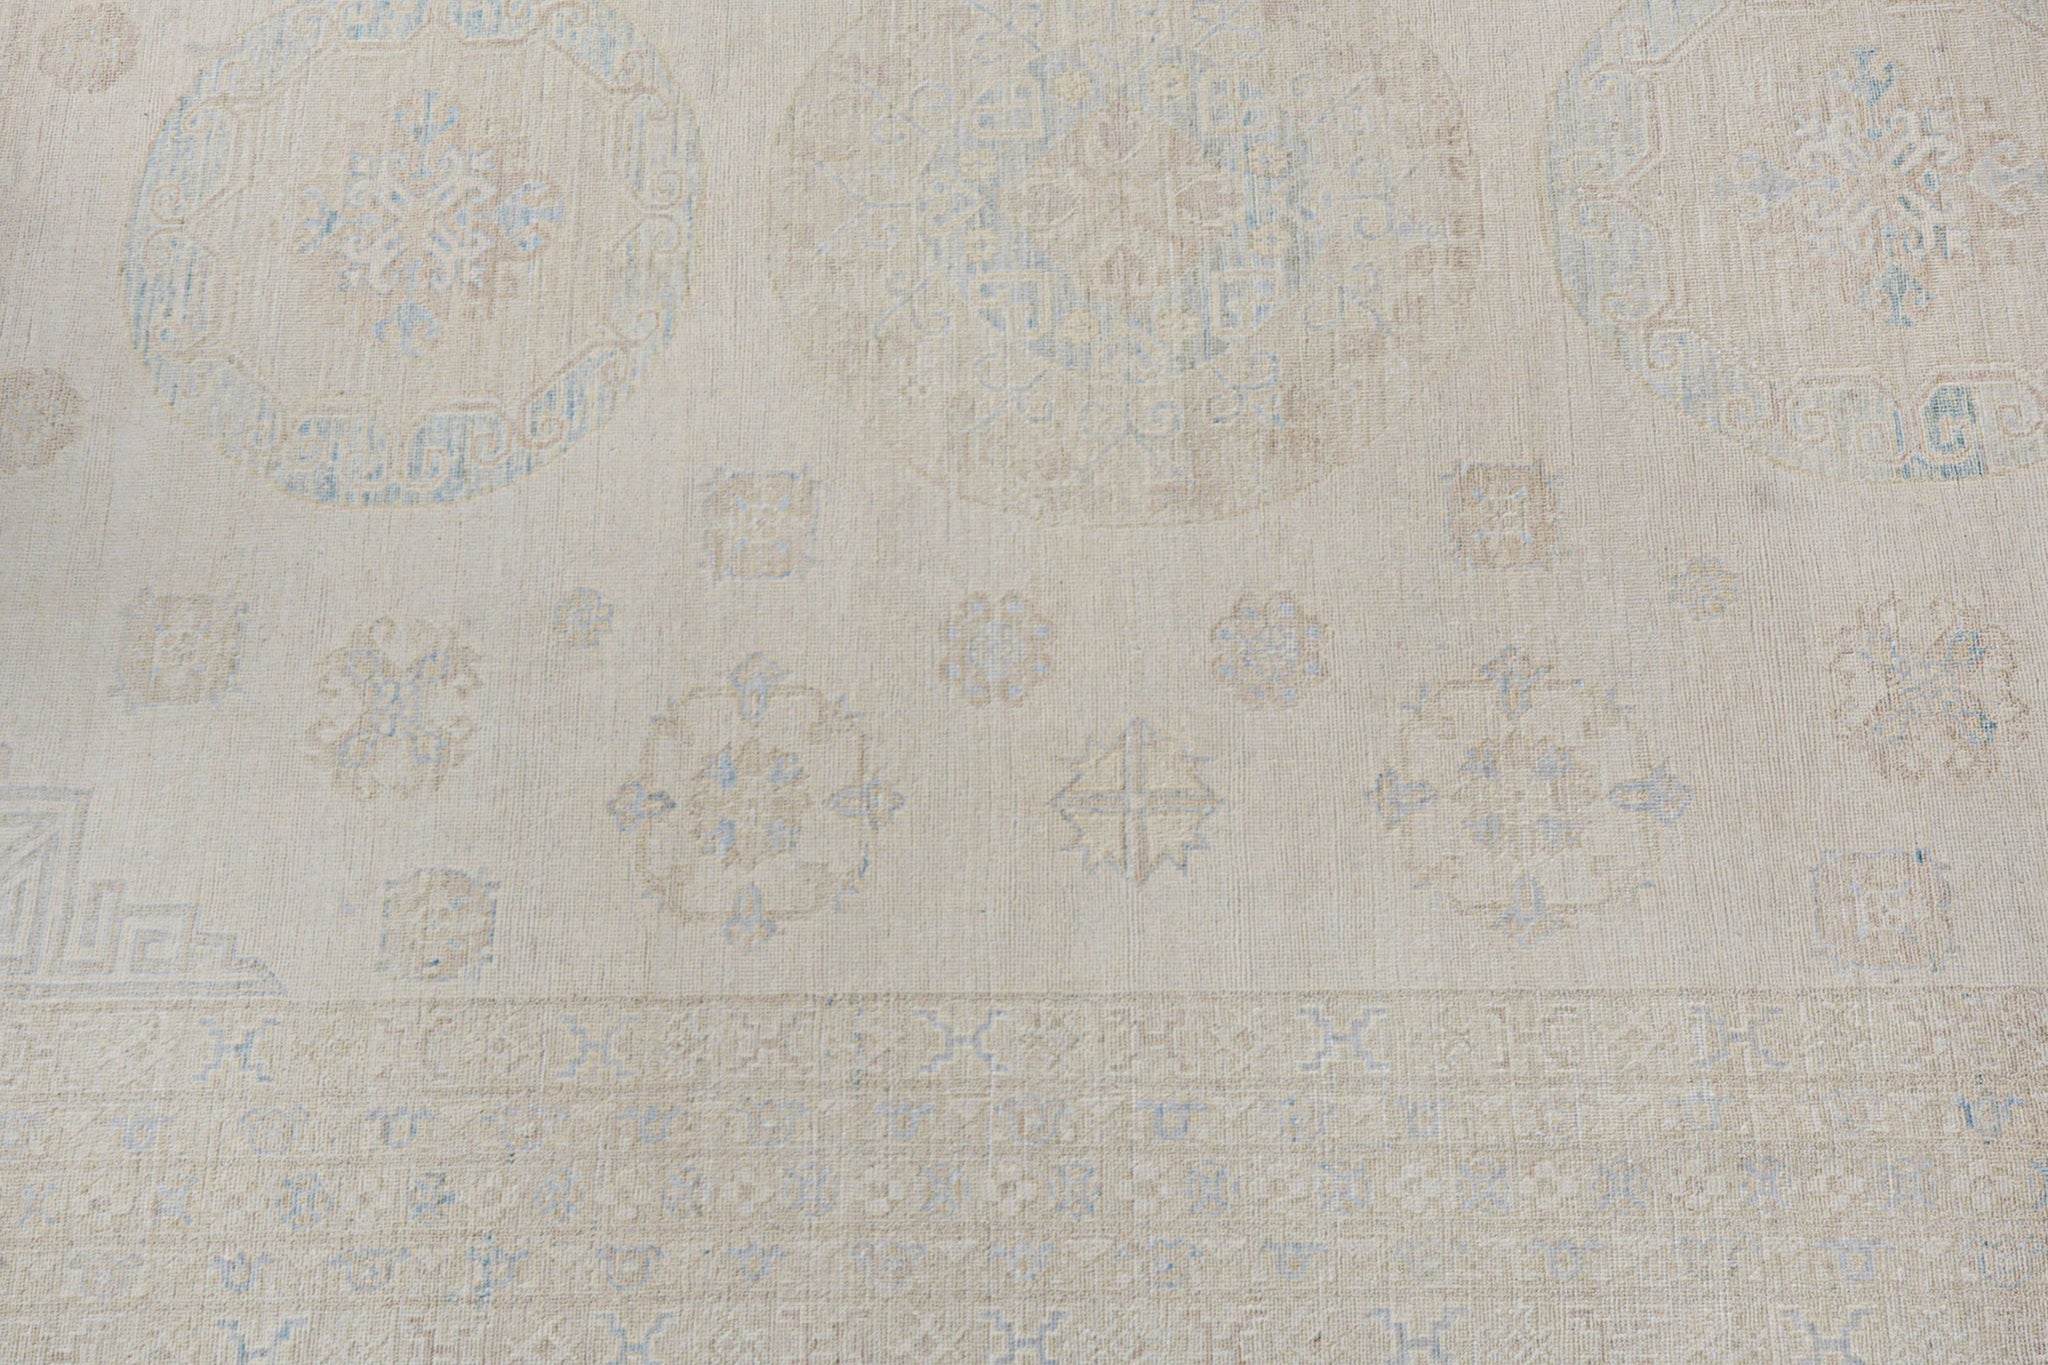 Handmade Afghan Chobi Rug | Bamyan Collection | 303 x 235 cm | 9'11" x 7'9"